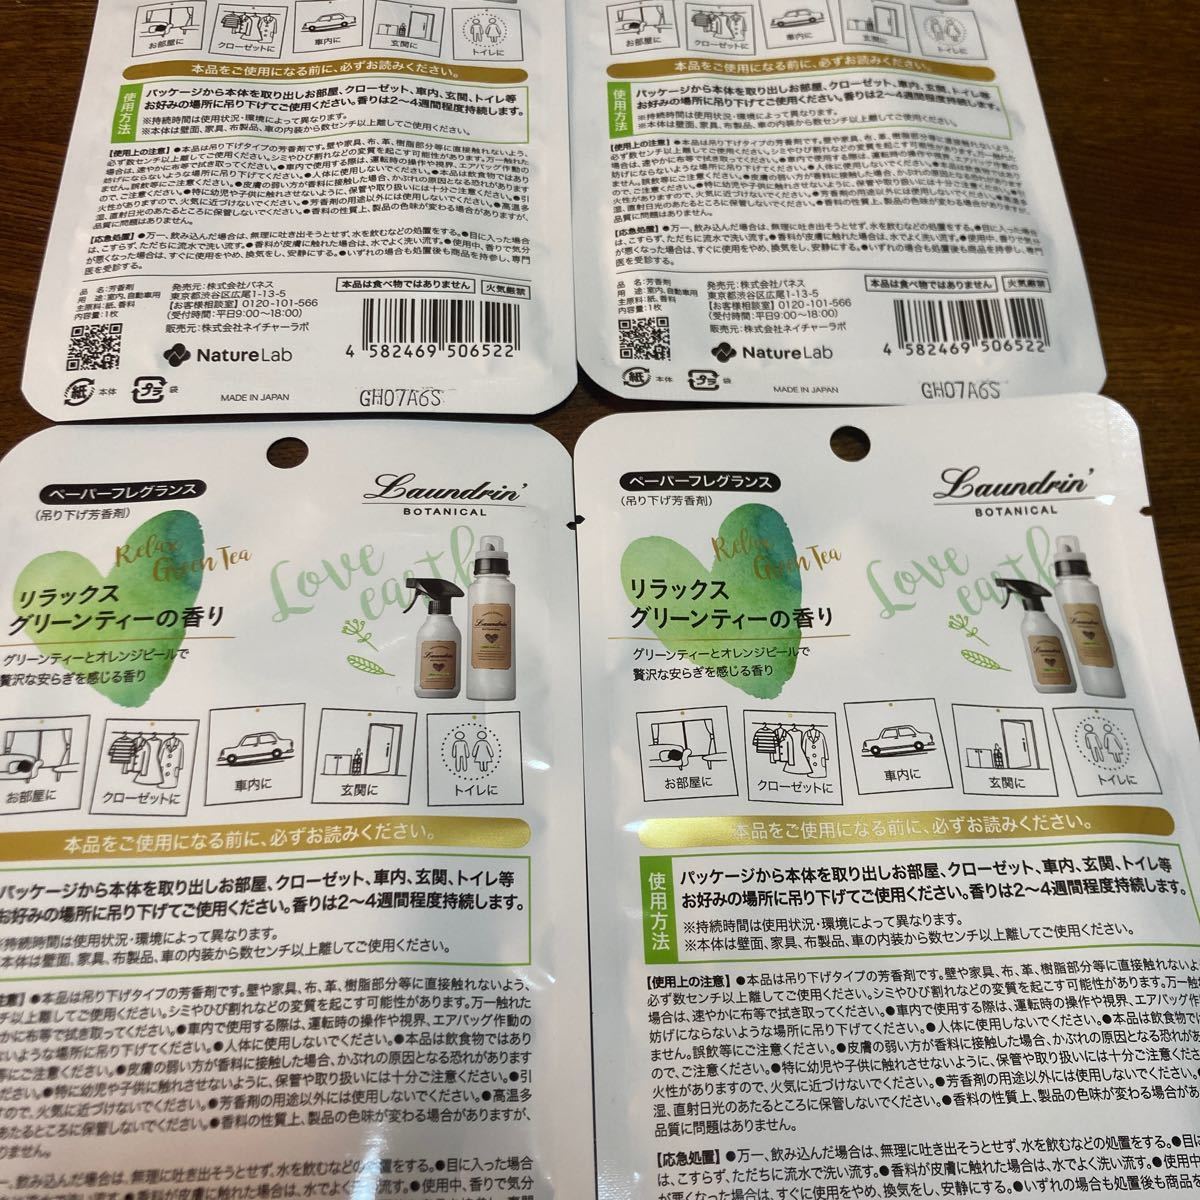  Land Lynn botanikaru бумага аромат relax зеленый чай Laundrin подвешивание ниже ароматические средства 2000 иен купон использование бесплатная доставка быстрое решение 